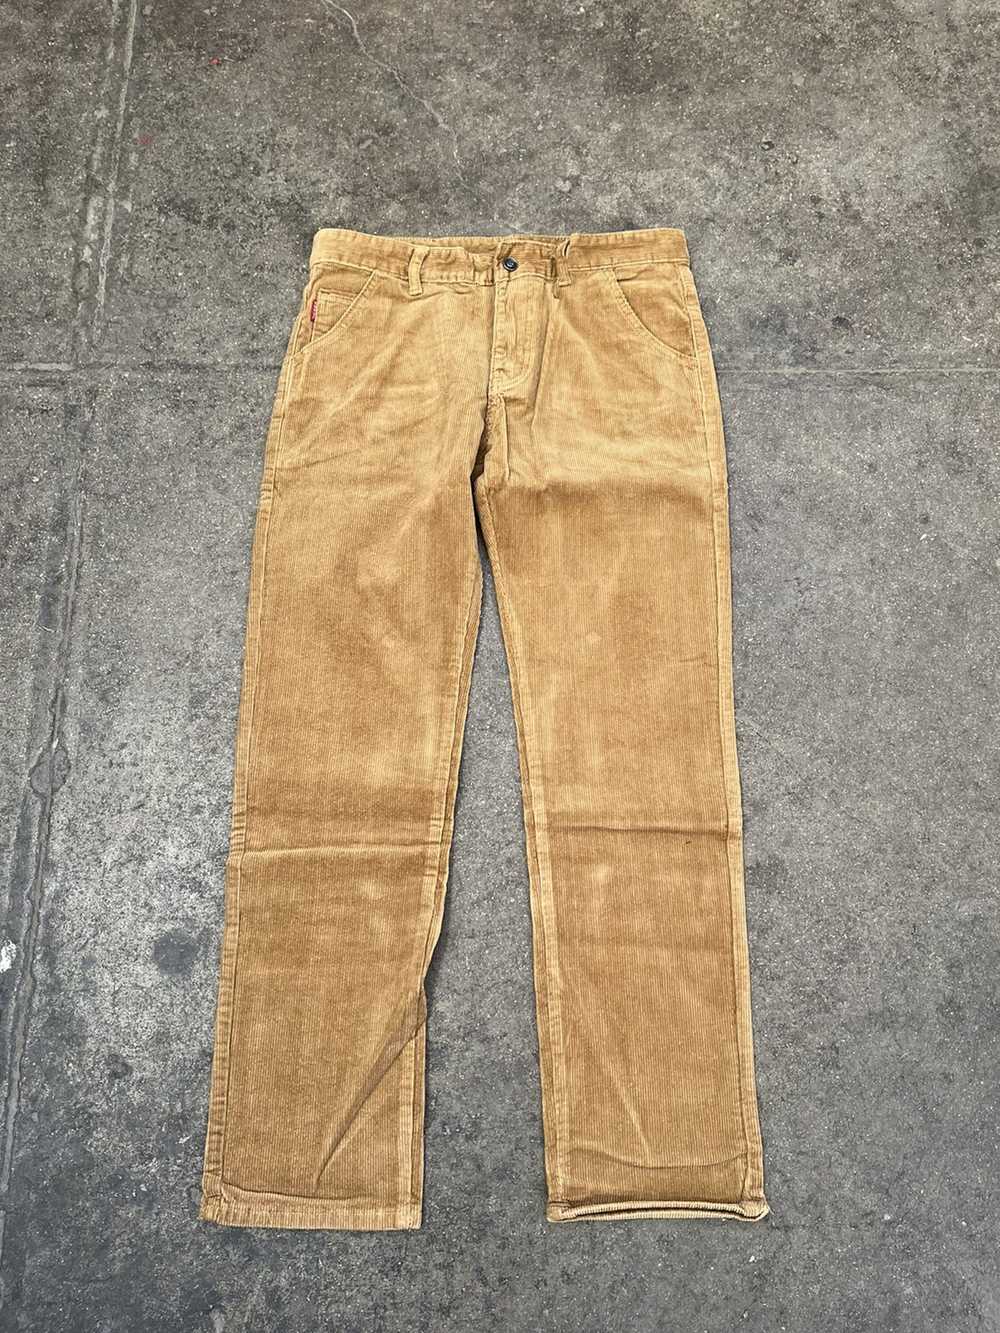 Streetwear × Vintage Corduroy Pants Wheat Brown - image 1